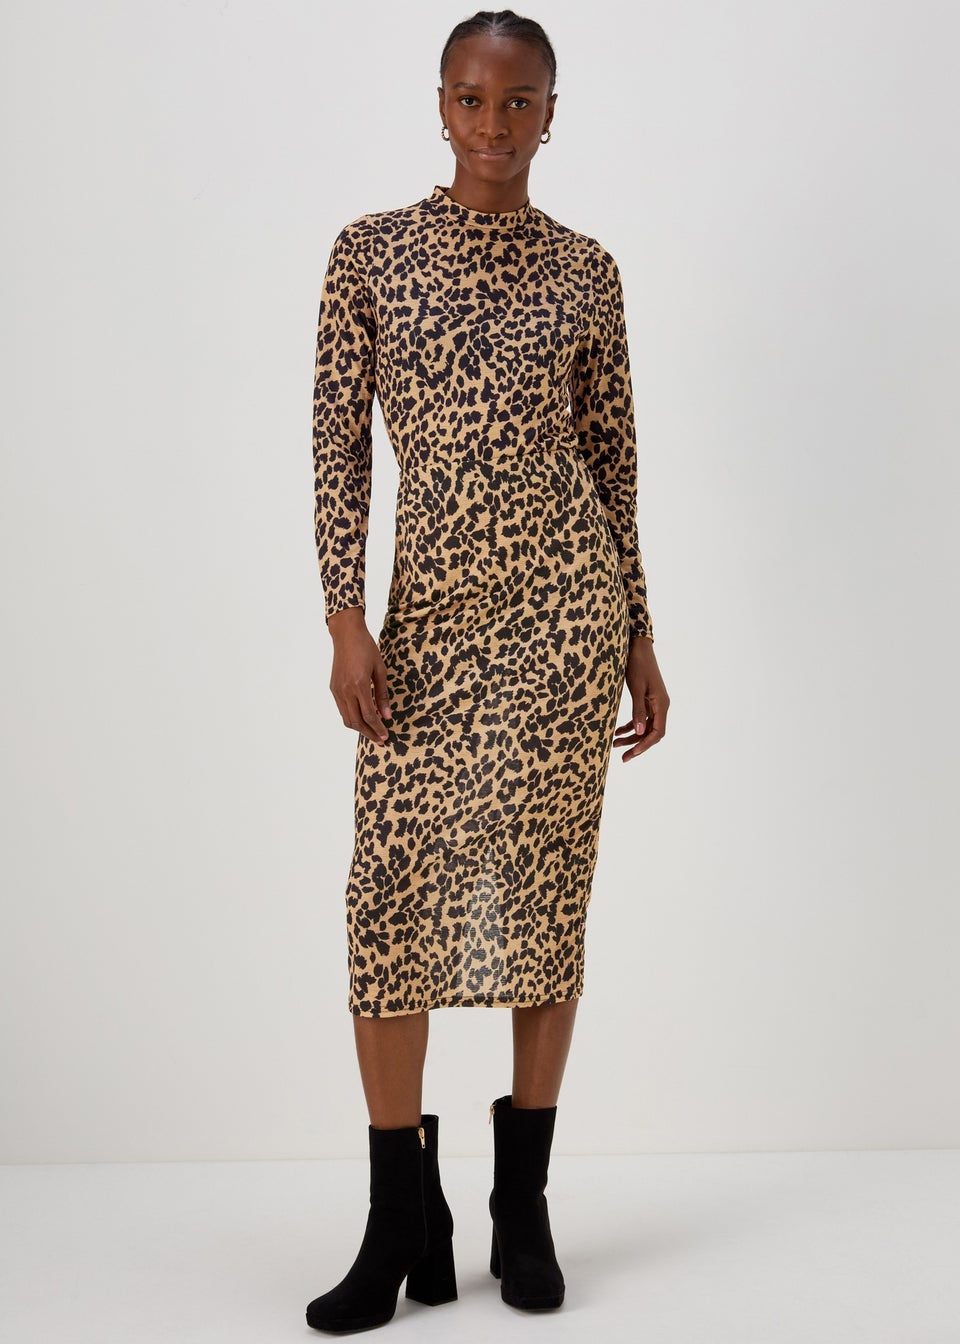 Tan Animal Print Co Ord Midi Skirt